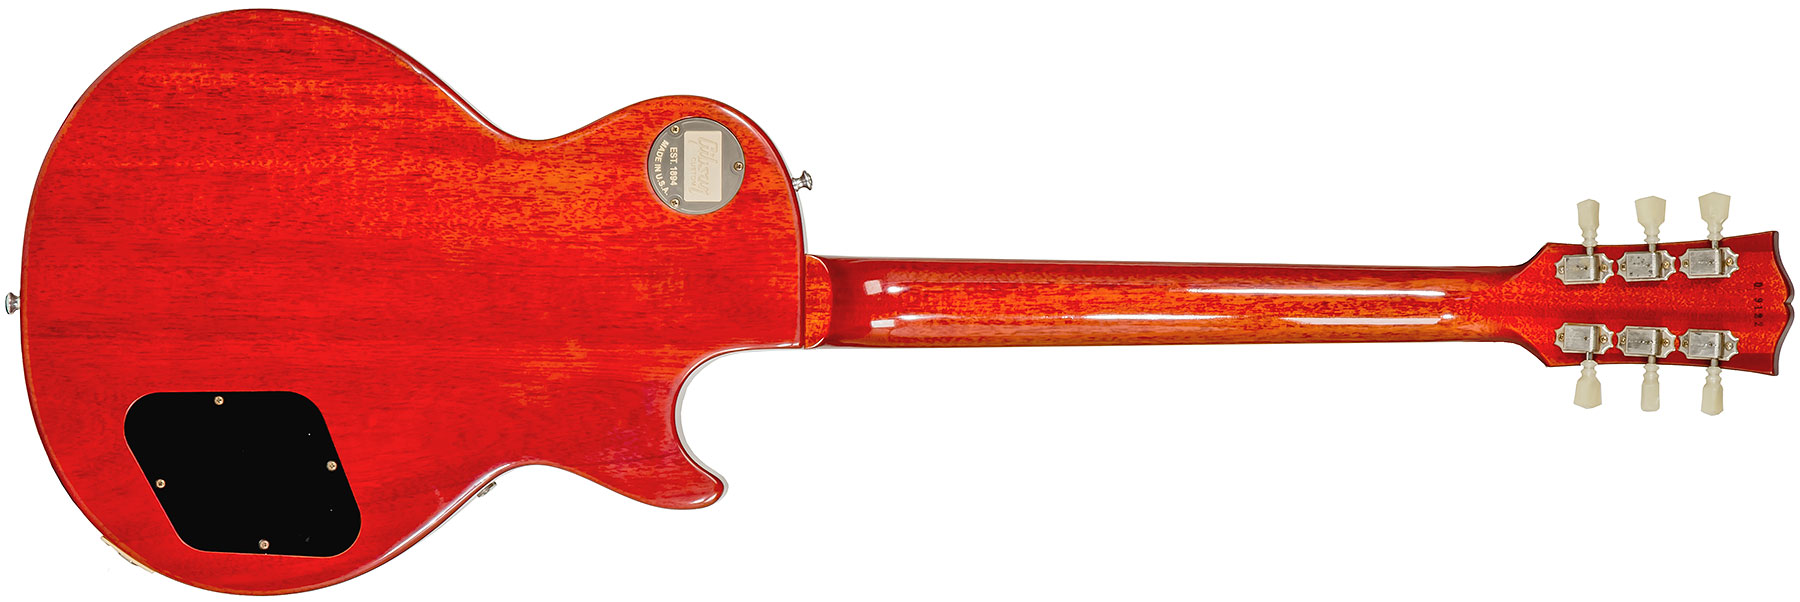 Gibson Custom Shop Les Paul Standard 1960 Reissue Lh Gaucher 2h Ht Rw #09122 - Vos Tangerine Burst - E-Gitarre für Linkshänder - Variation 1